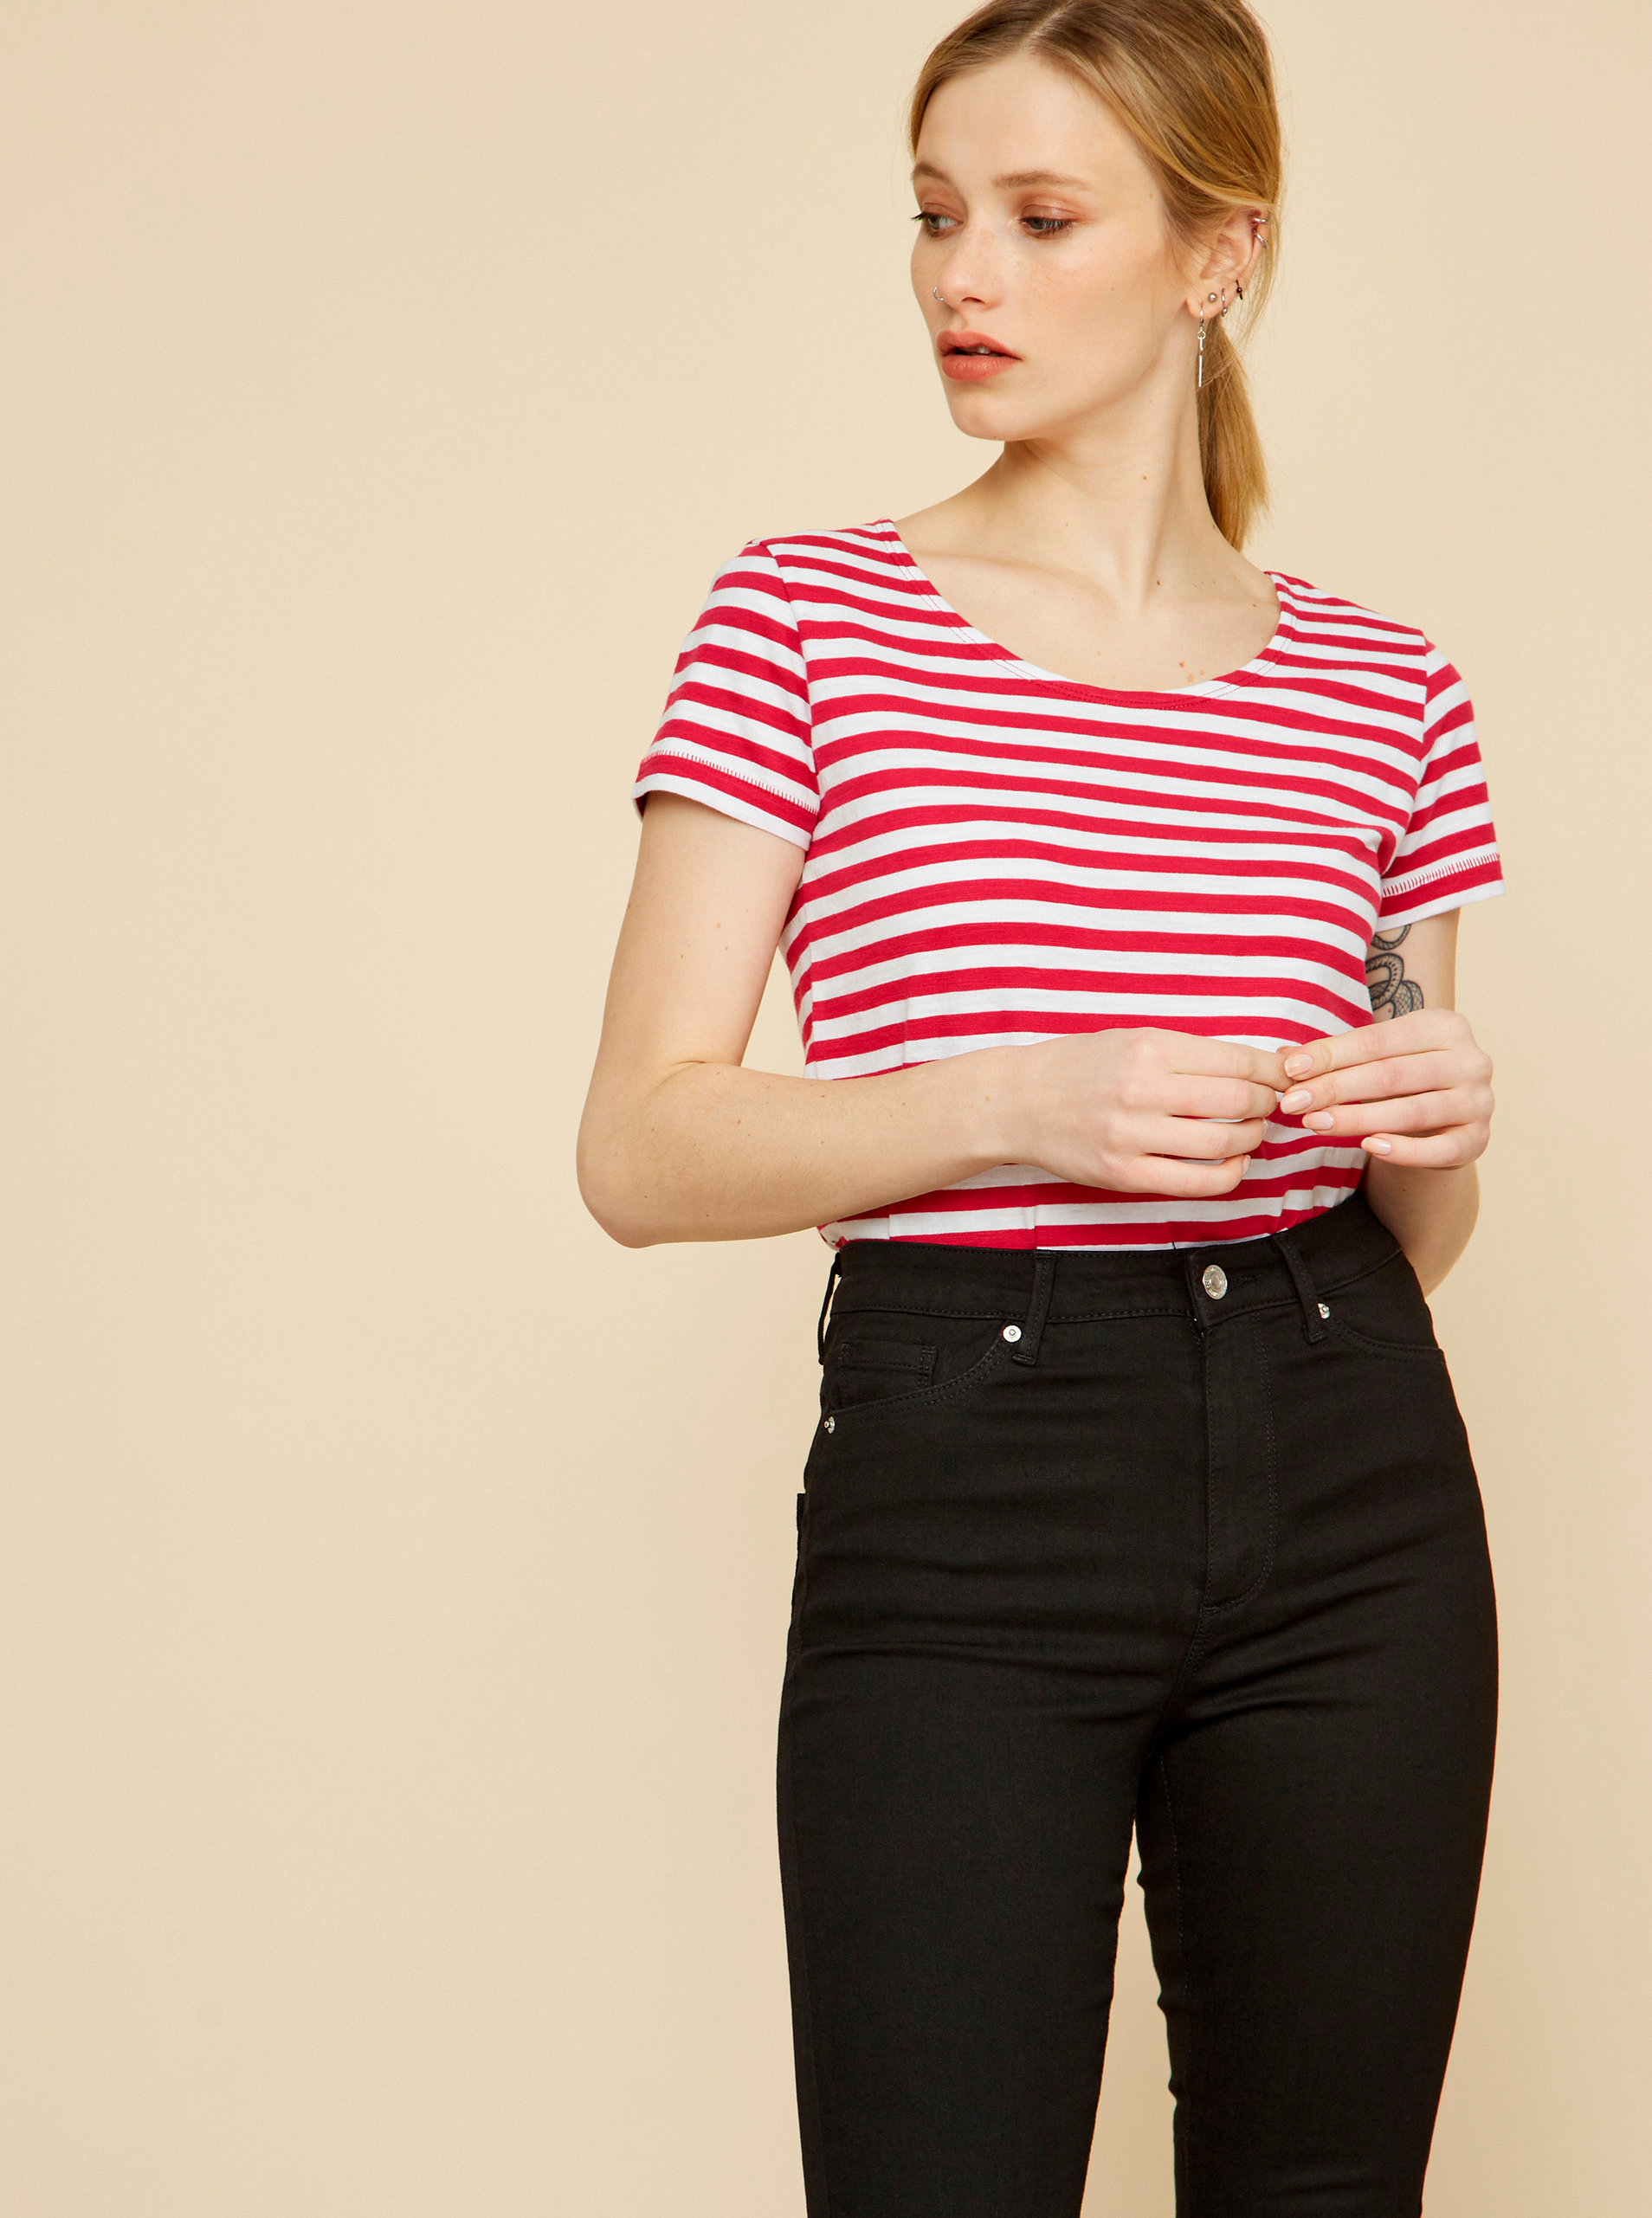 Fotografie Bílo-růžové dámské pruhované tričko ZOOT Baseline Amber